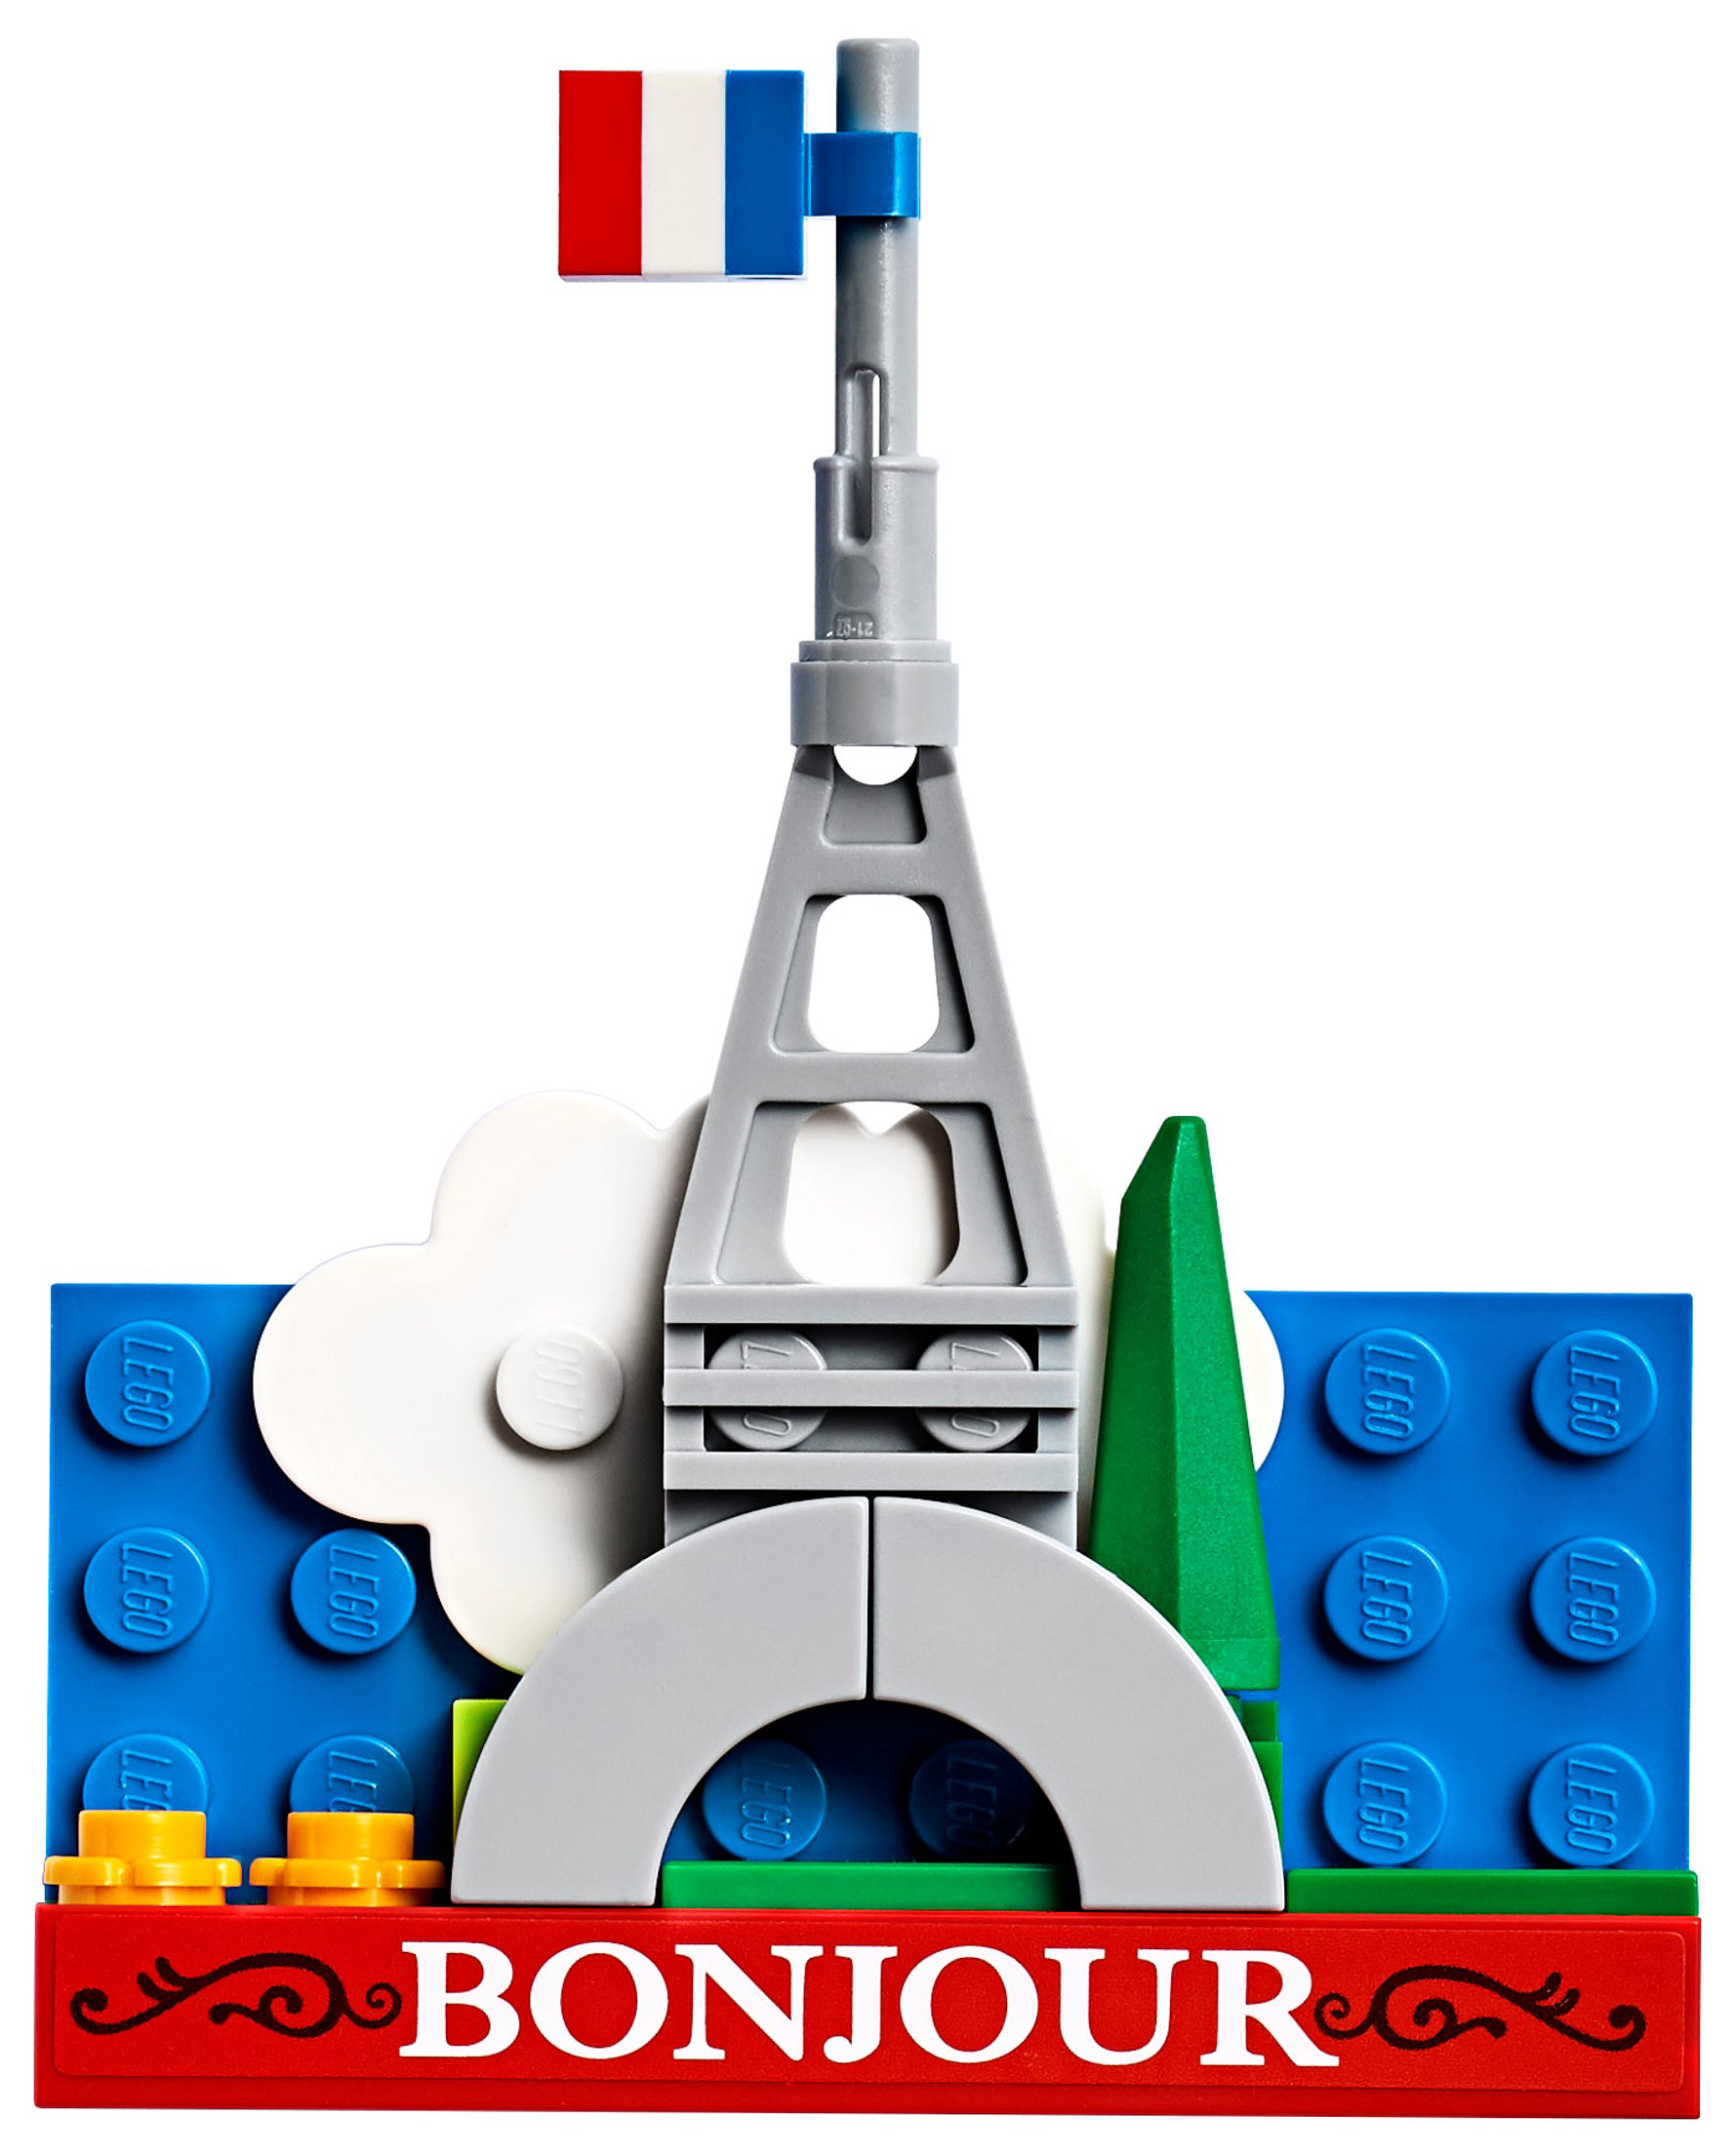 Construire une tour Eiffel en Lego - M@ths en-vie